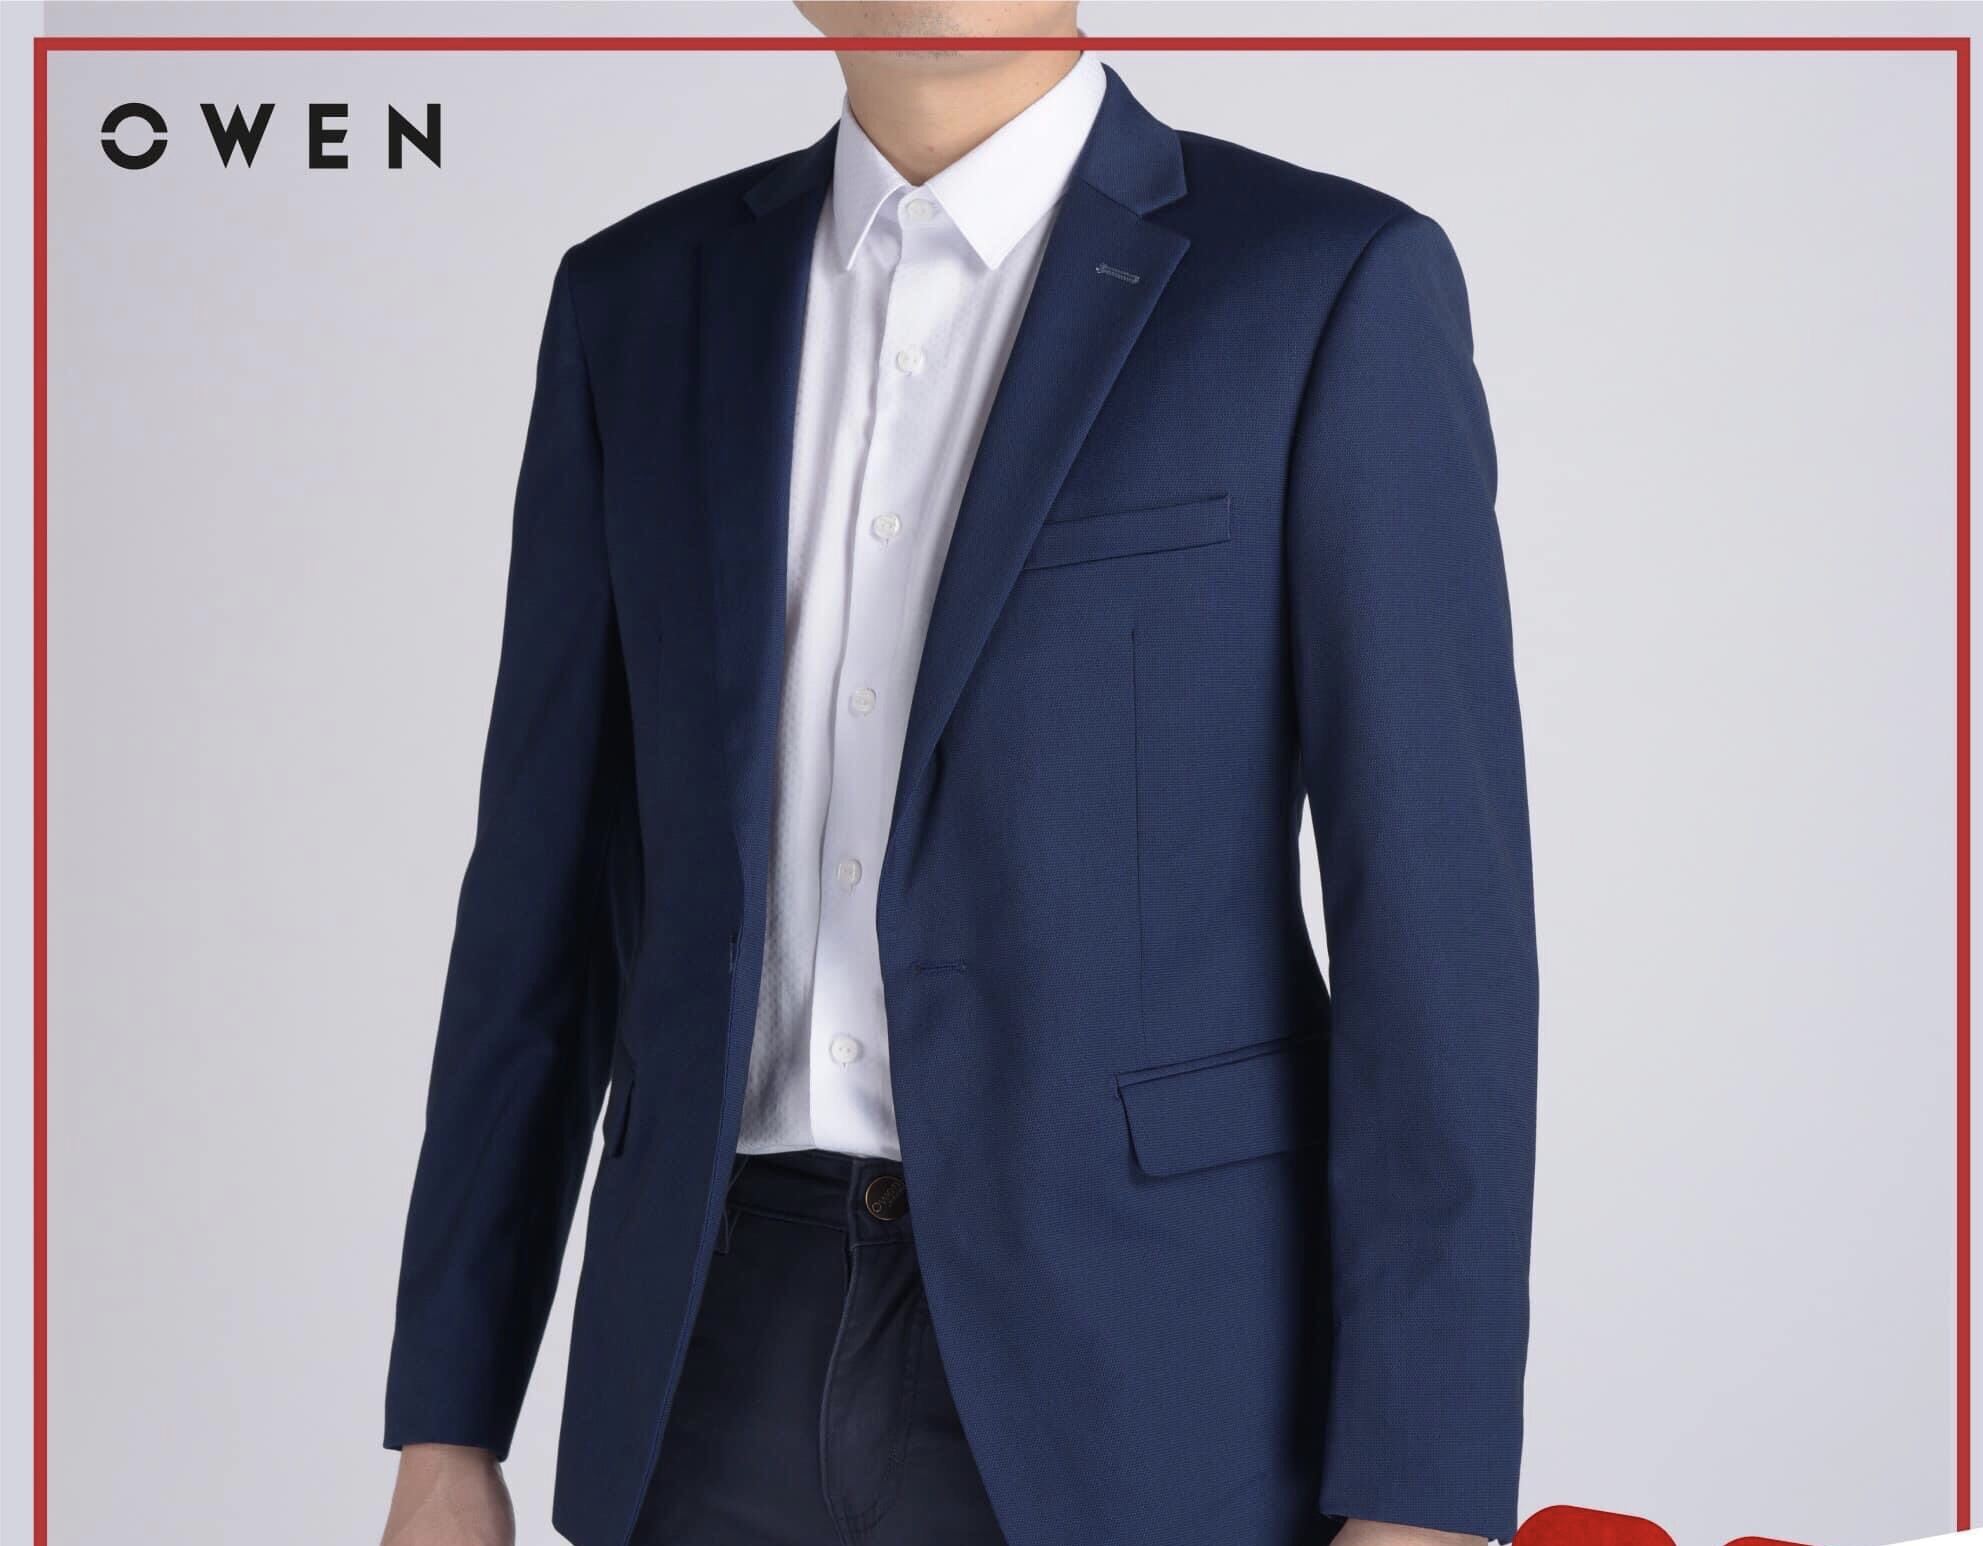 Áo khoác blazer nam demi Owen BL23613 màu xanh xám vest rời vải gỗ namu cao  cấp dáng regular fit trẻ trung lịch lãm  Lazadavn